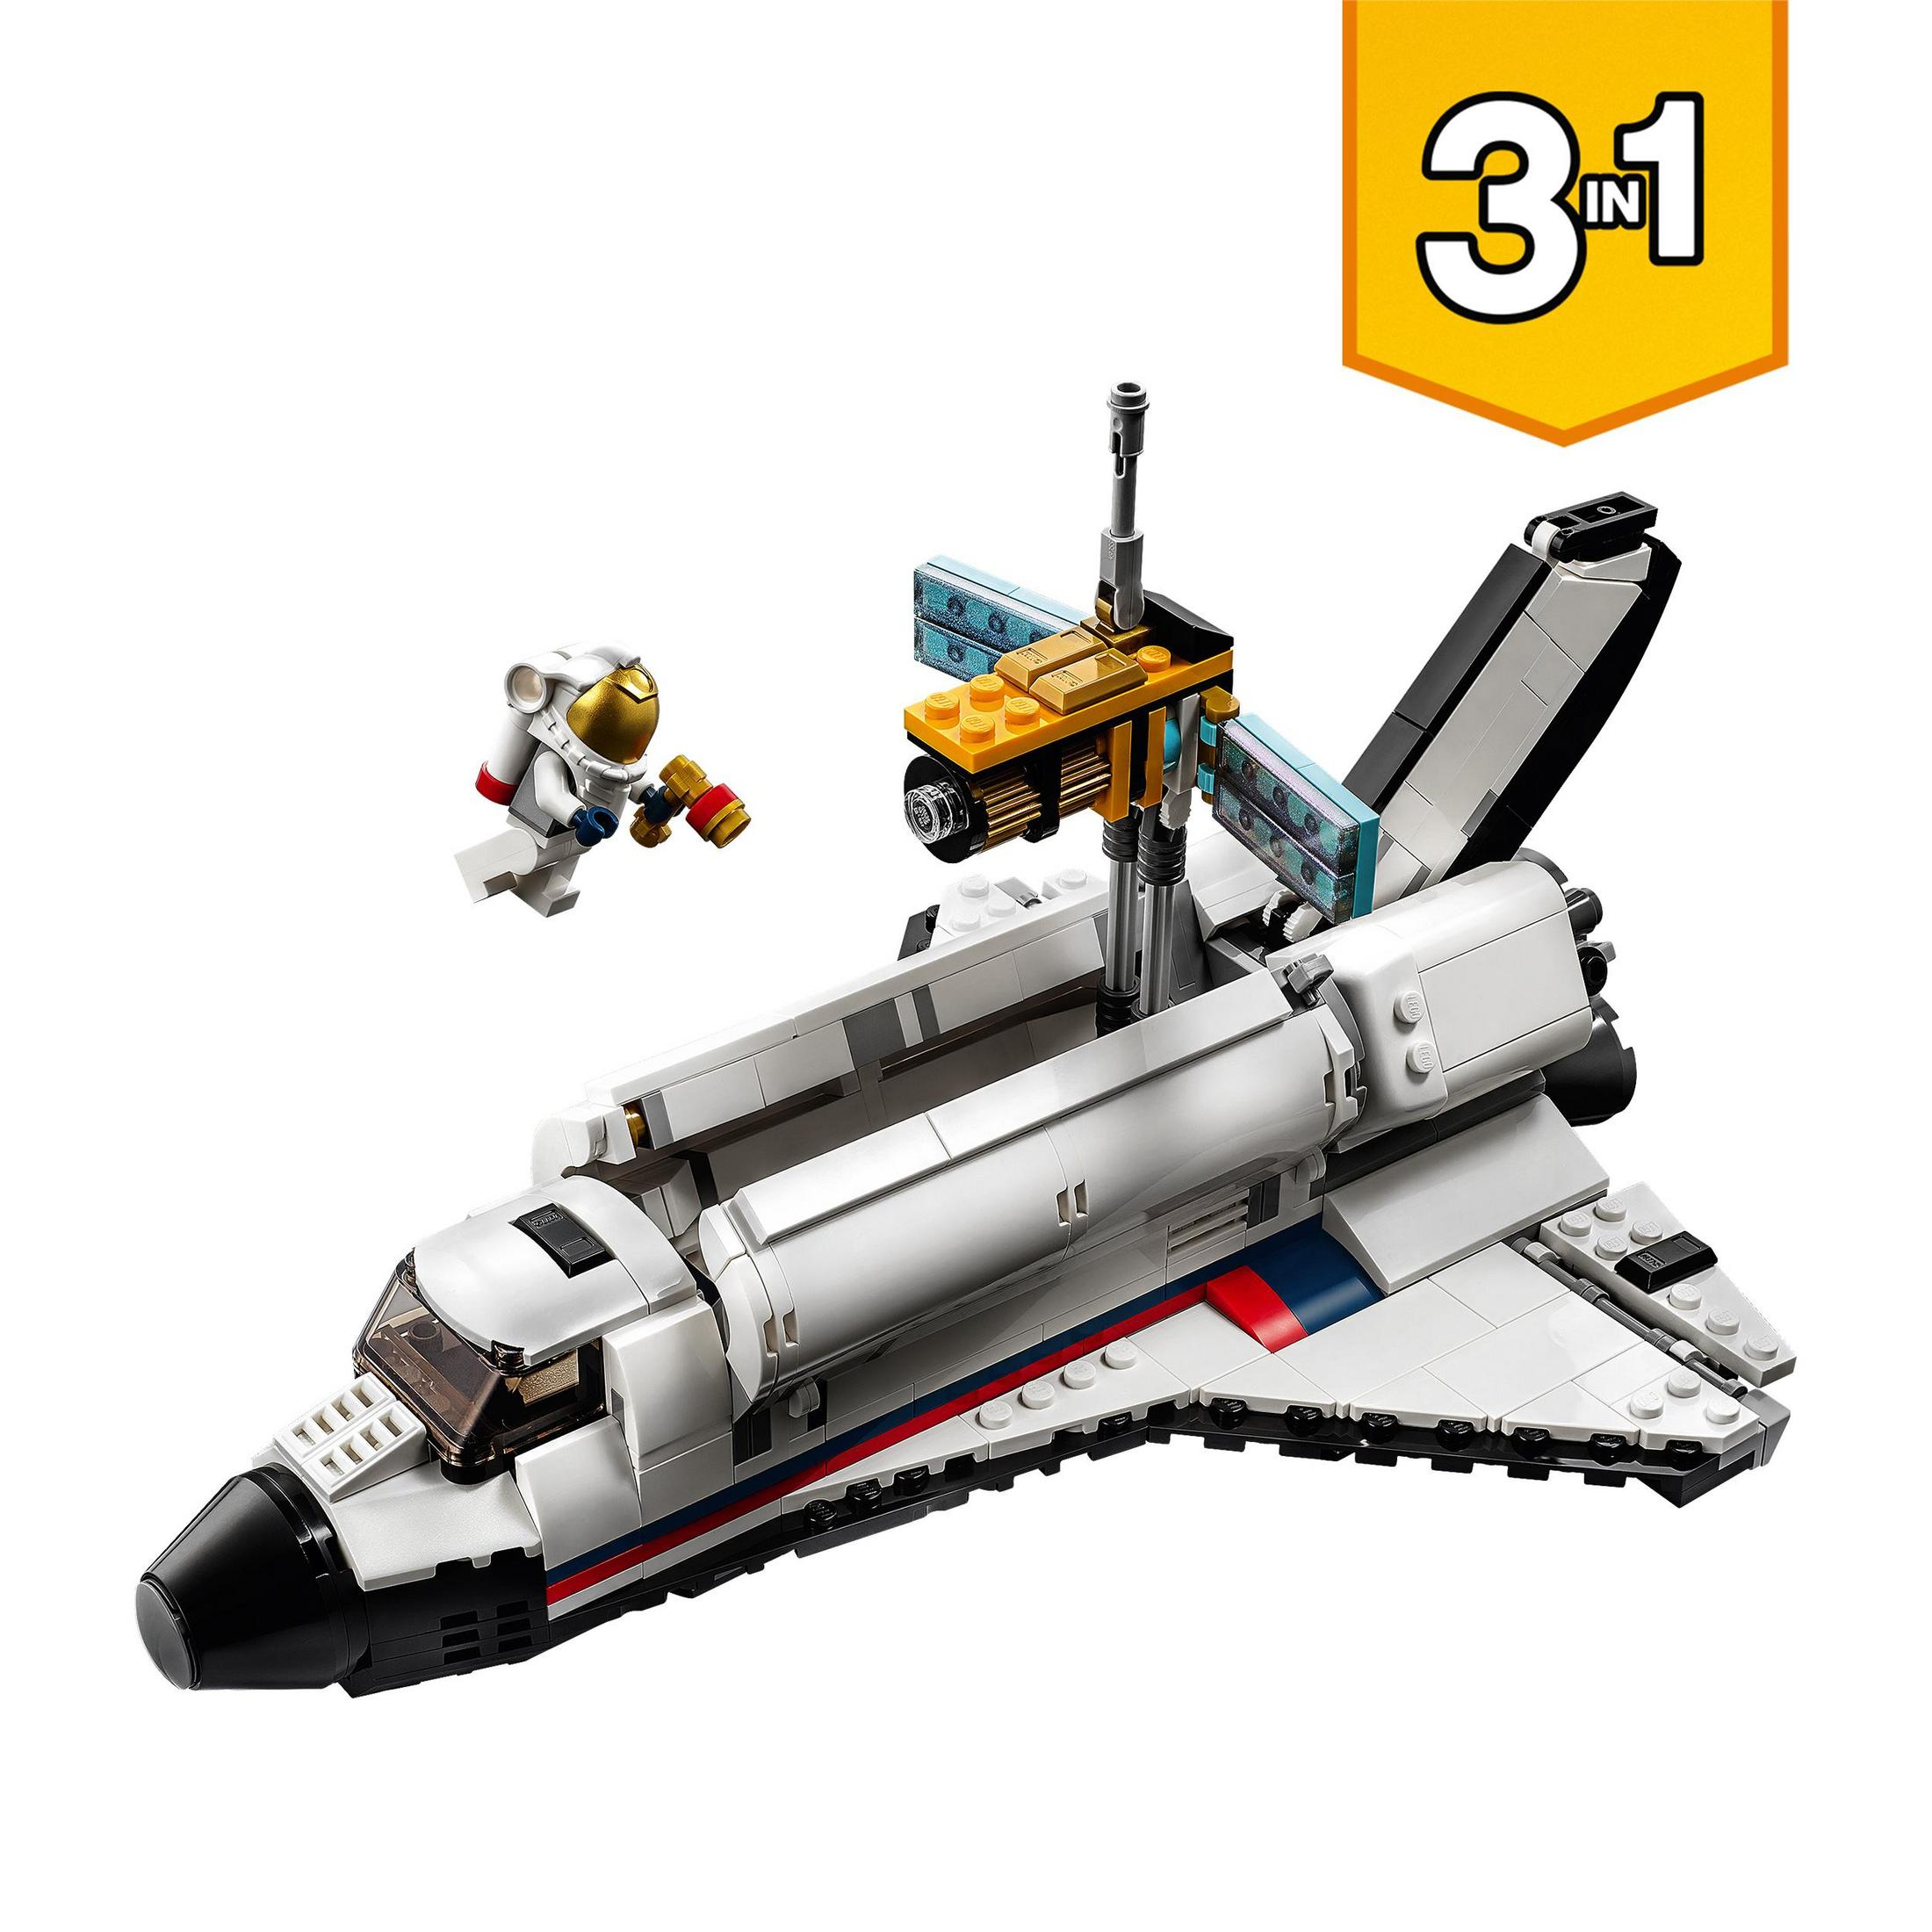 SPACESHUTTLE-ABENTEUER Bausatz, Mehrfarbig 31117 LEGO